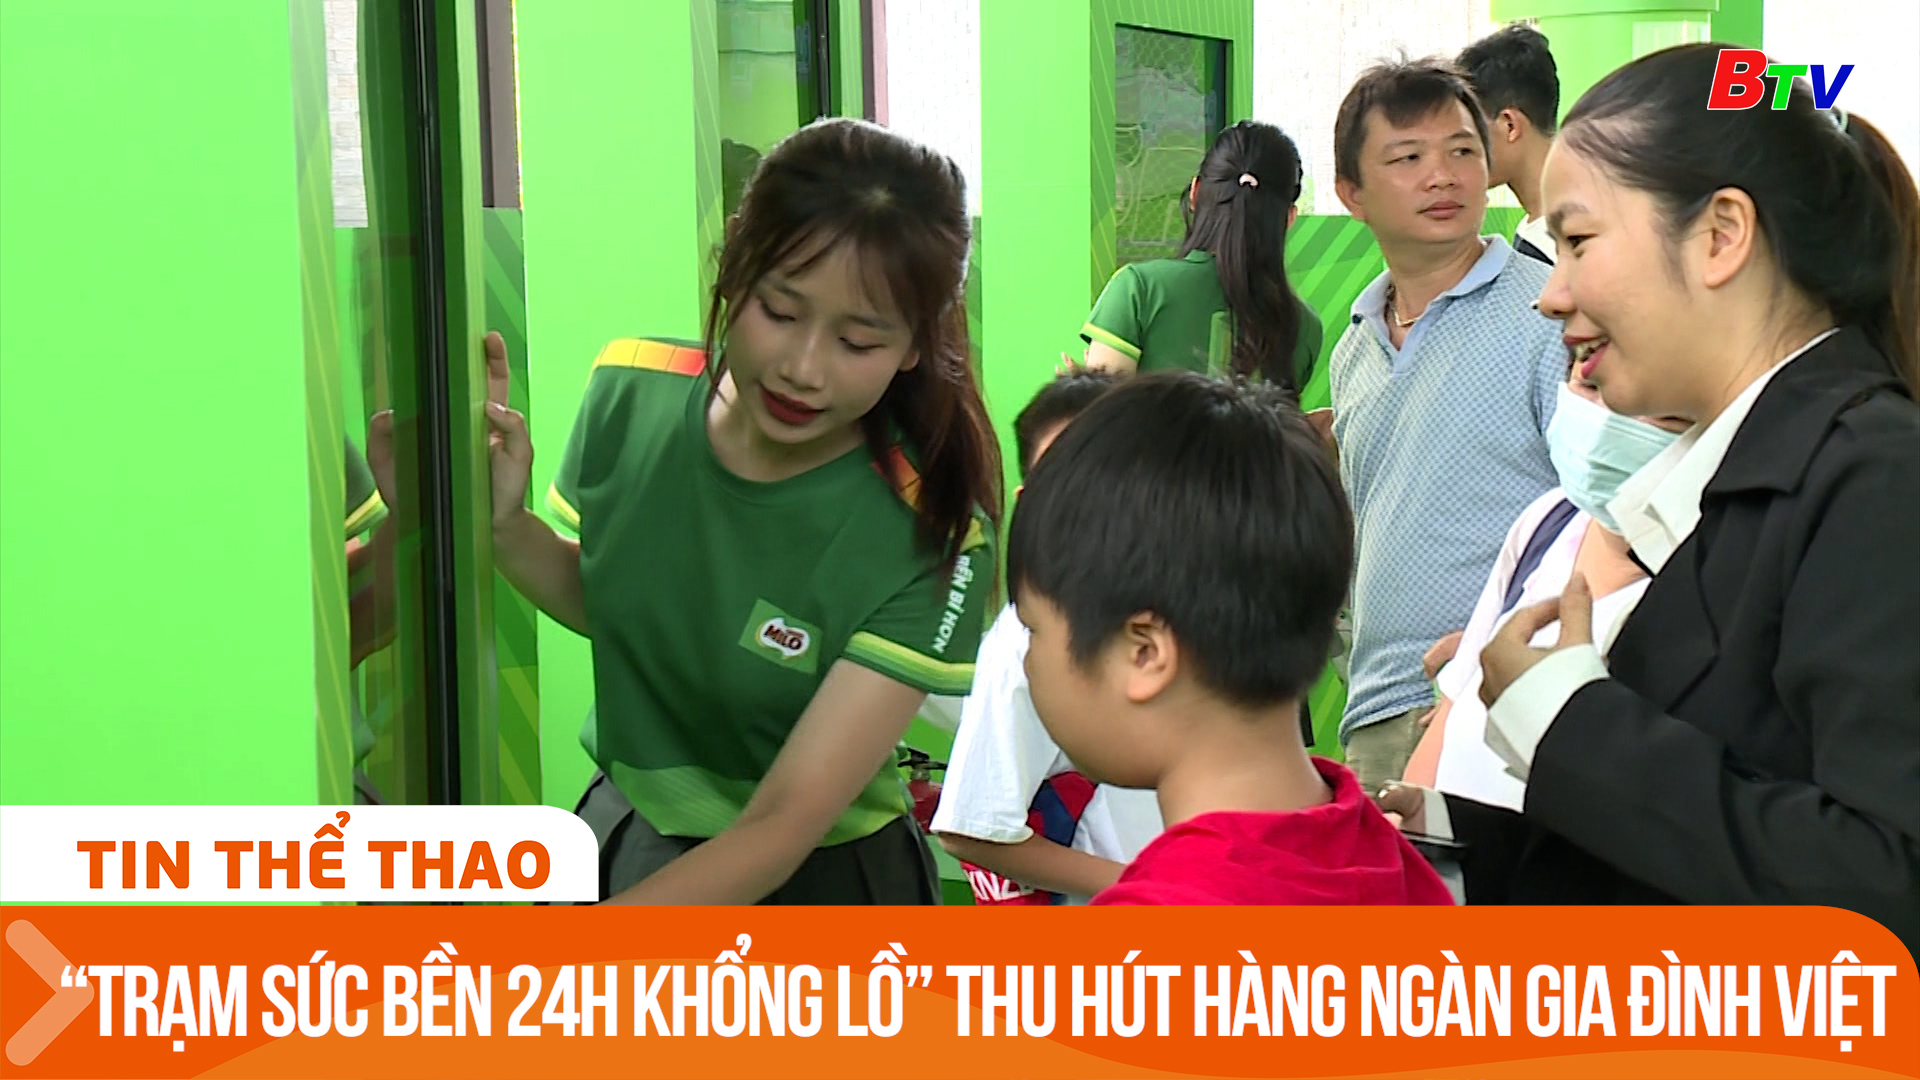 “Trạm sức bền 24h khổng lồ” của Nestlé Milo thu hút hàng ngàn gia đình Việt | Tin Thể thao 24h	